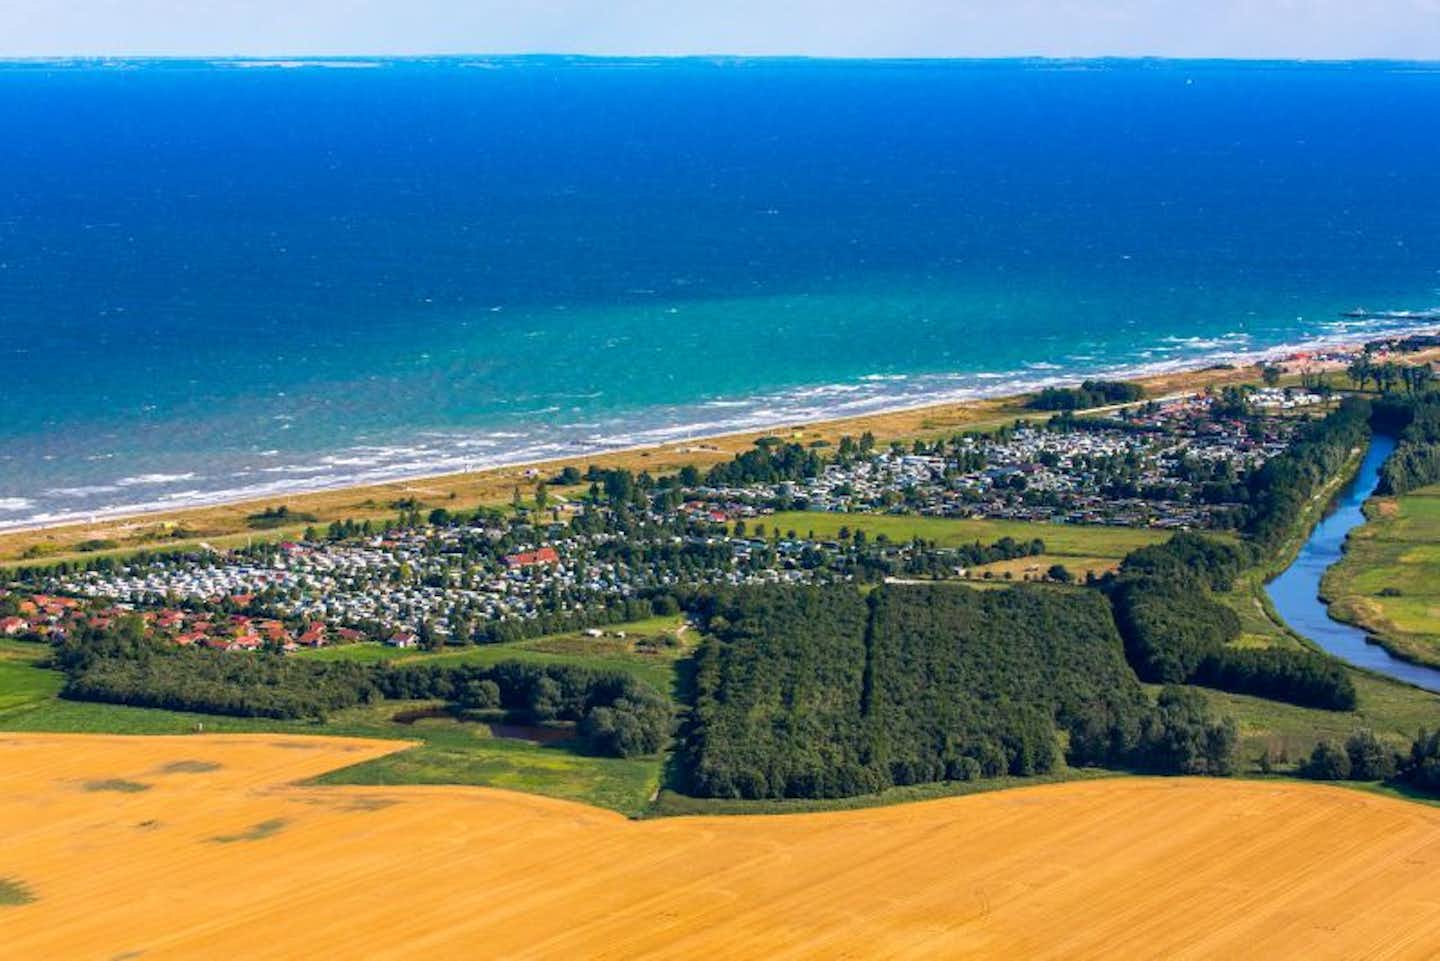 Camping Stieglitz - Blick auf das Gelände vom Campingplatz an der Meeresküste Luftaufnahme